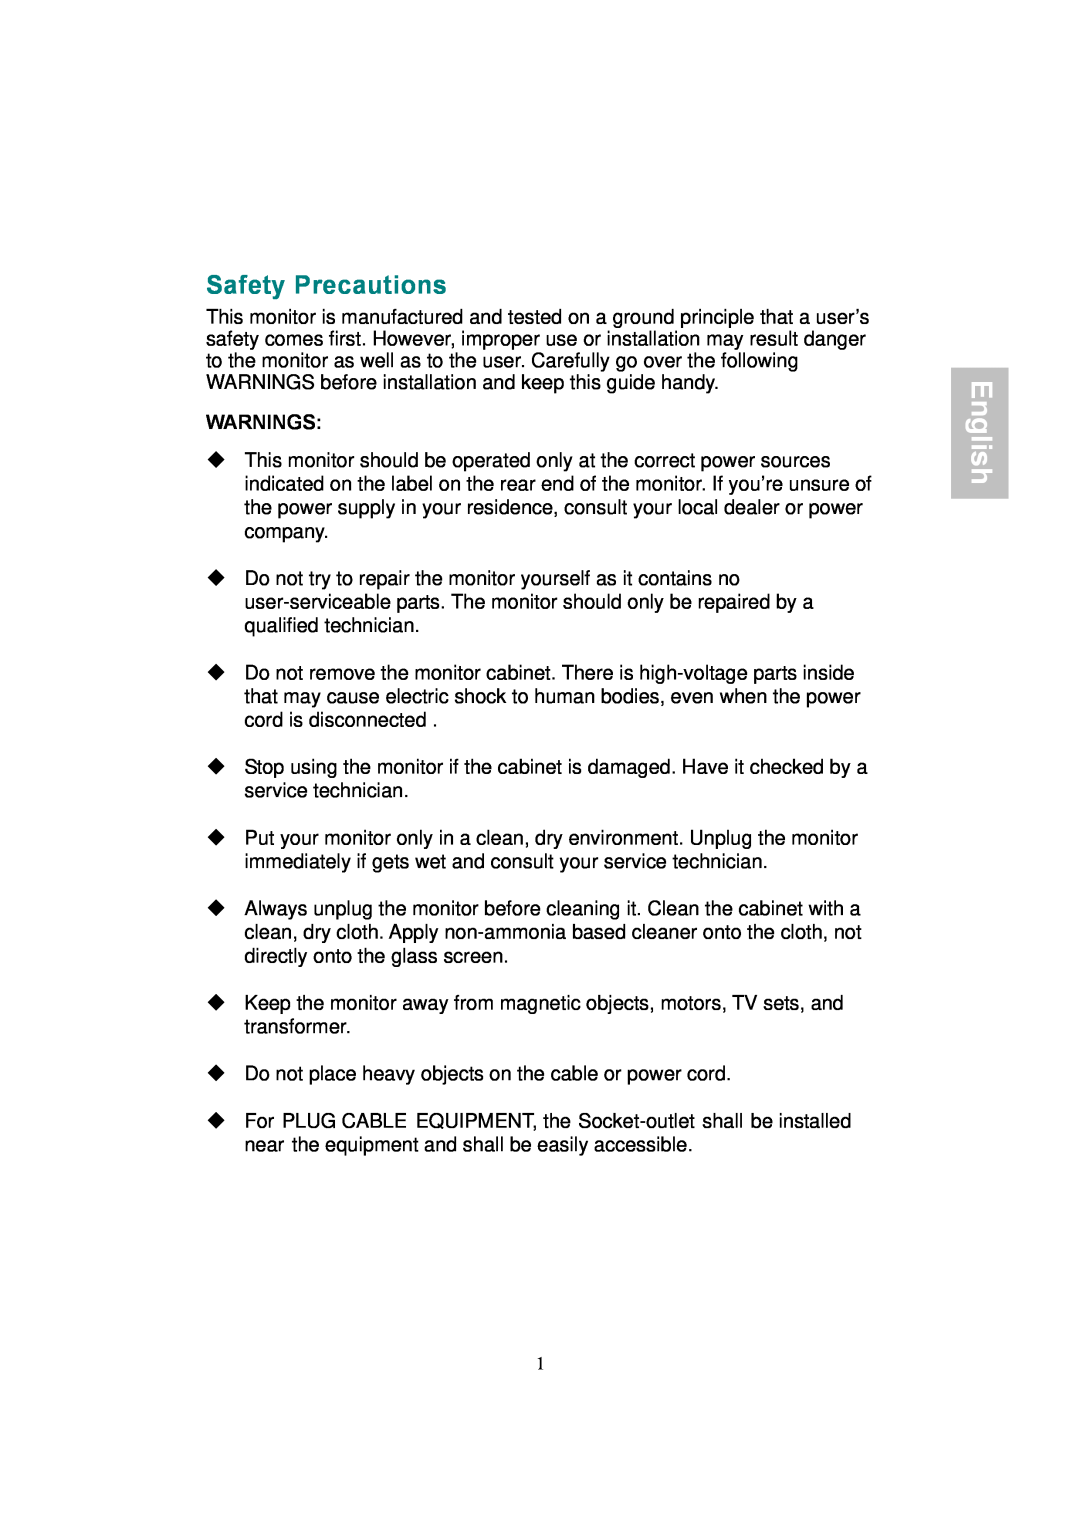 AOC 177Sa-1 manual Safety Precautions, English, Warnings 